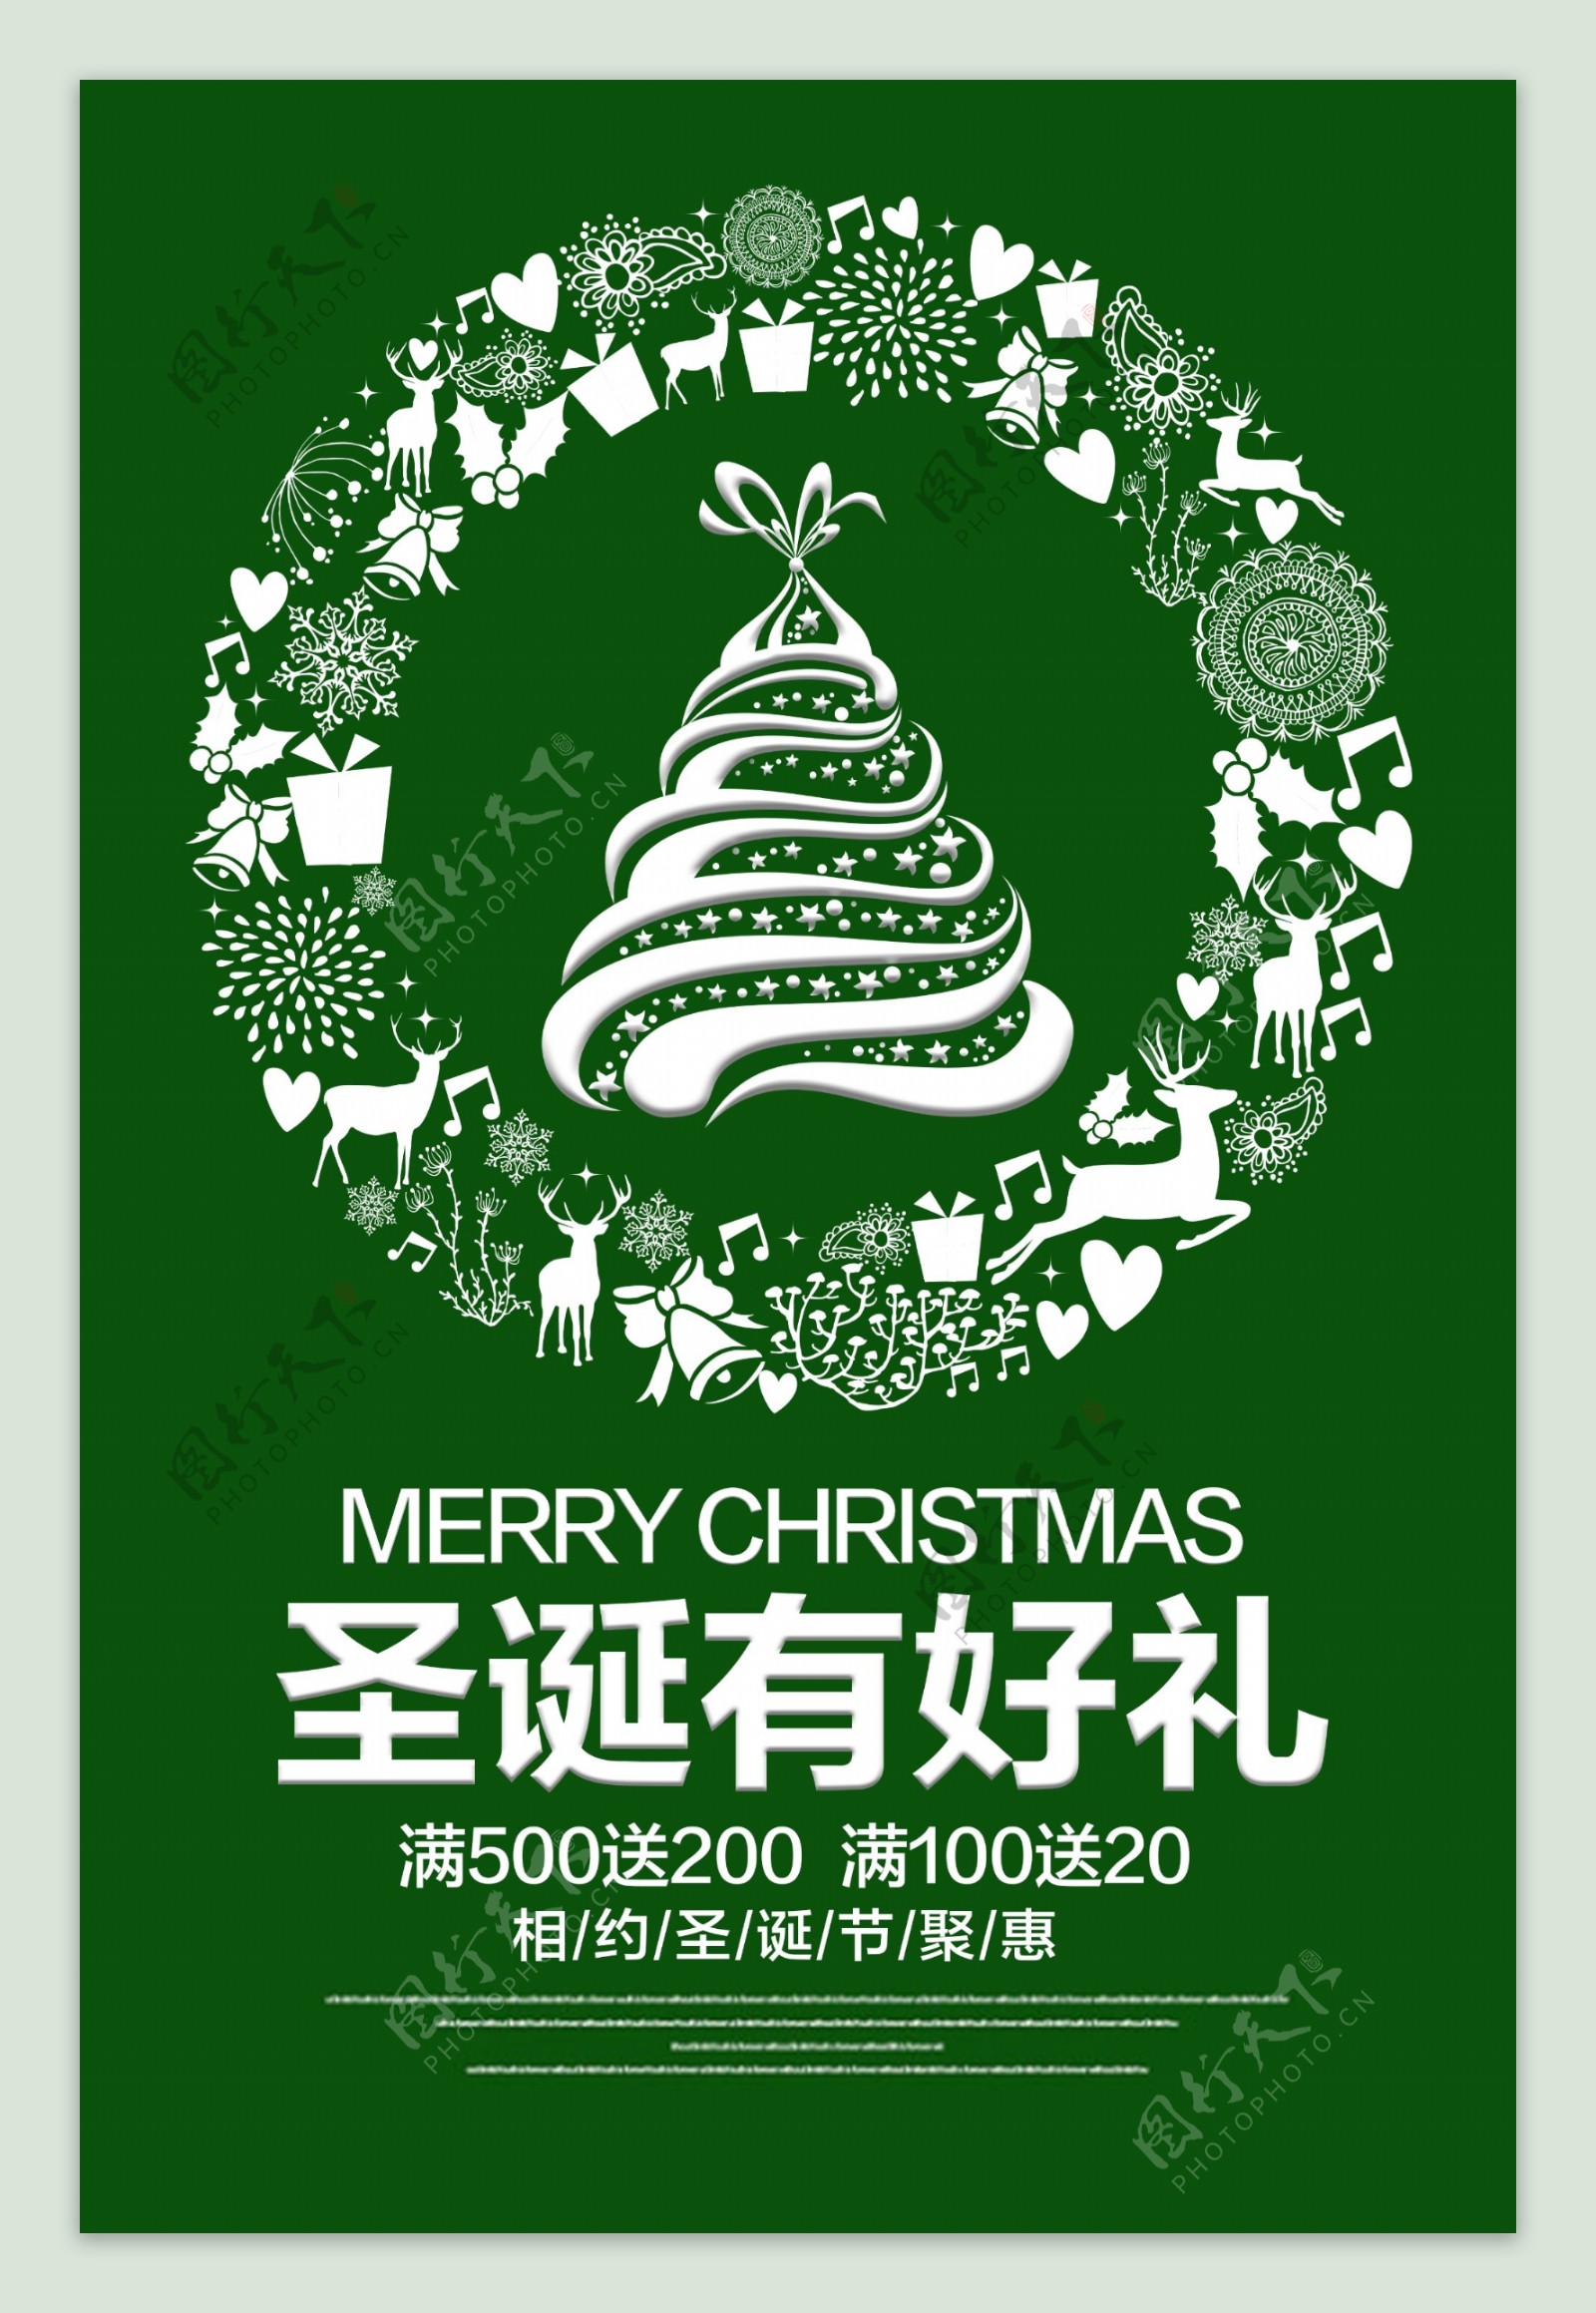 绿色清新圣诞有好礼好海报设计